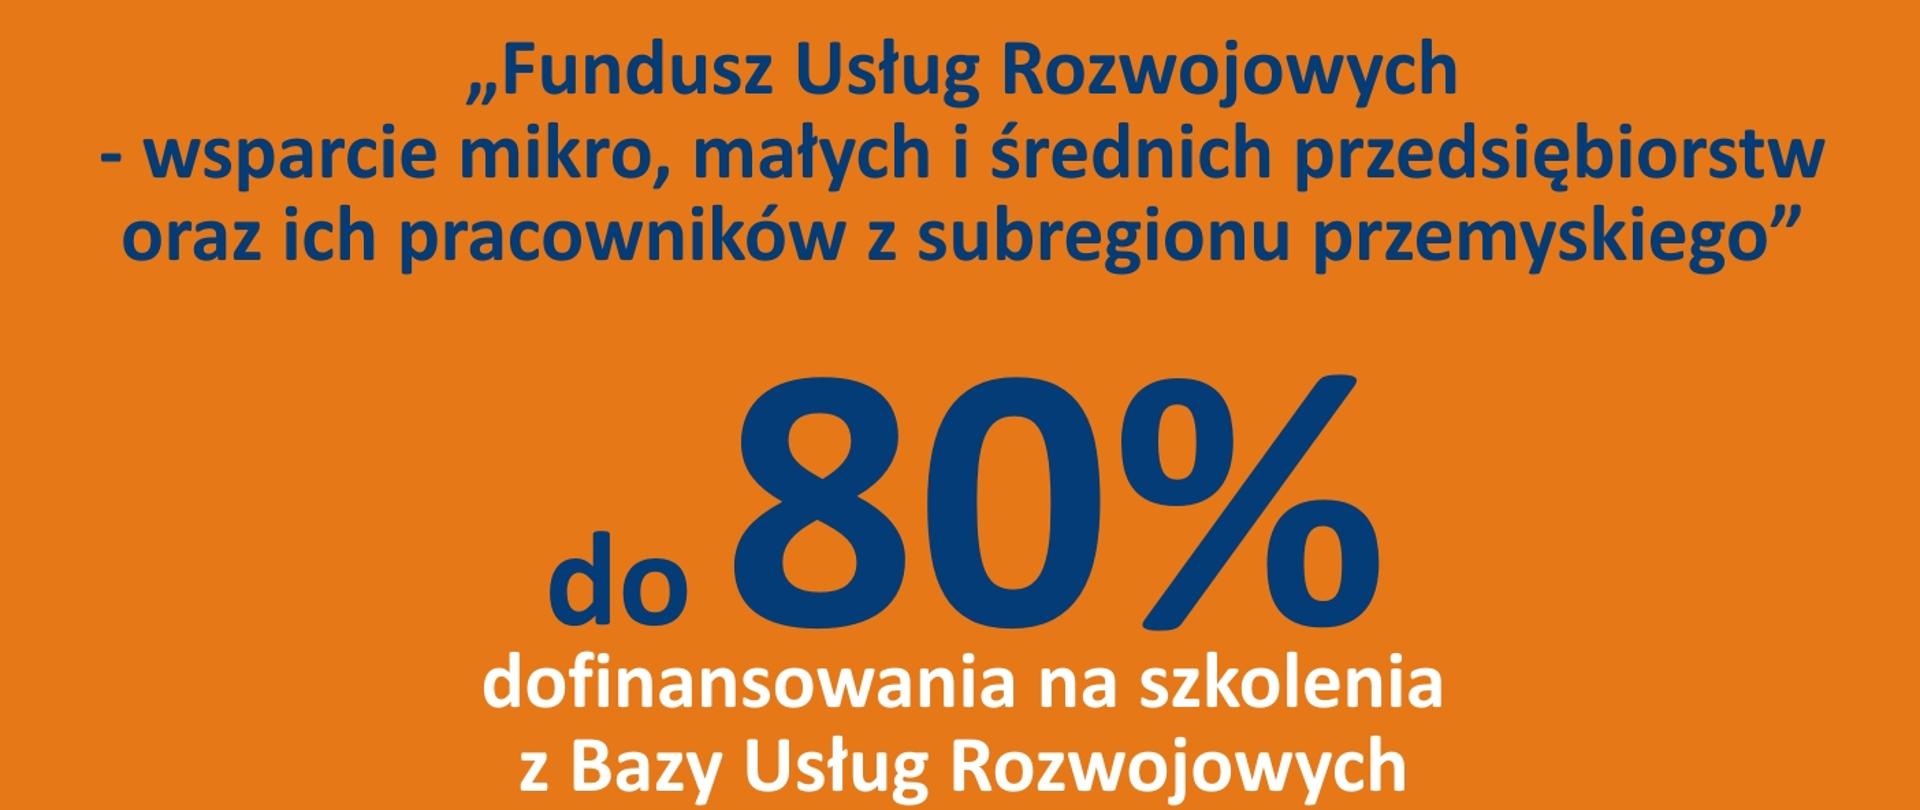 Plakat przedstawiający "Fundusz usług Rozwojowych - wsparcie mikro, małych i średnich przedsiębiorstw oraz ich pracowników z subregionu przemyskiego"